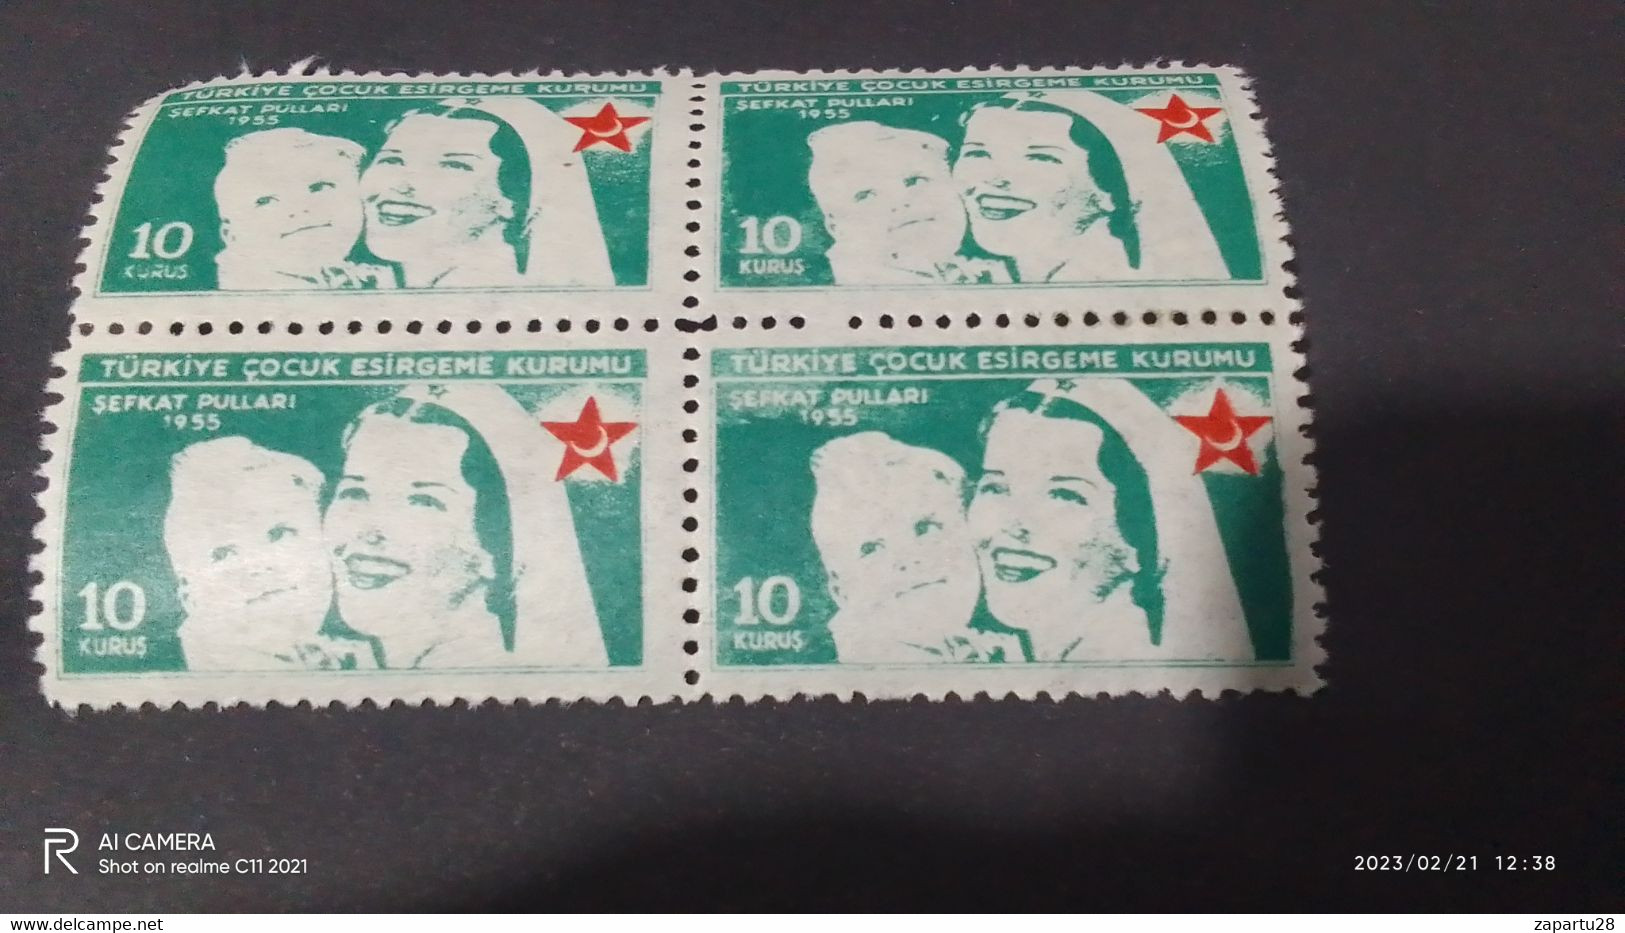 TÜRKEY--YARDIM PULLARI- 1950-60   ÇOCUK ESİRGEME BLOCK 10K DAMGASIZ - Charity Stamps